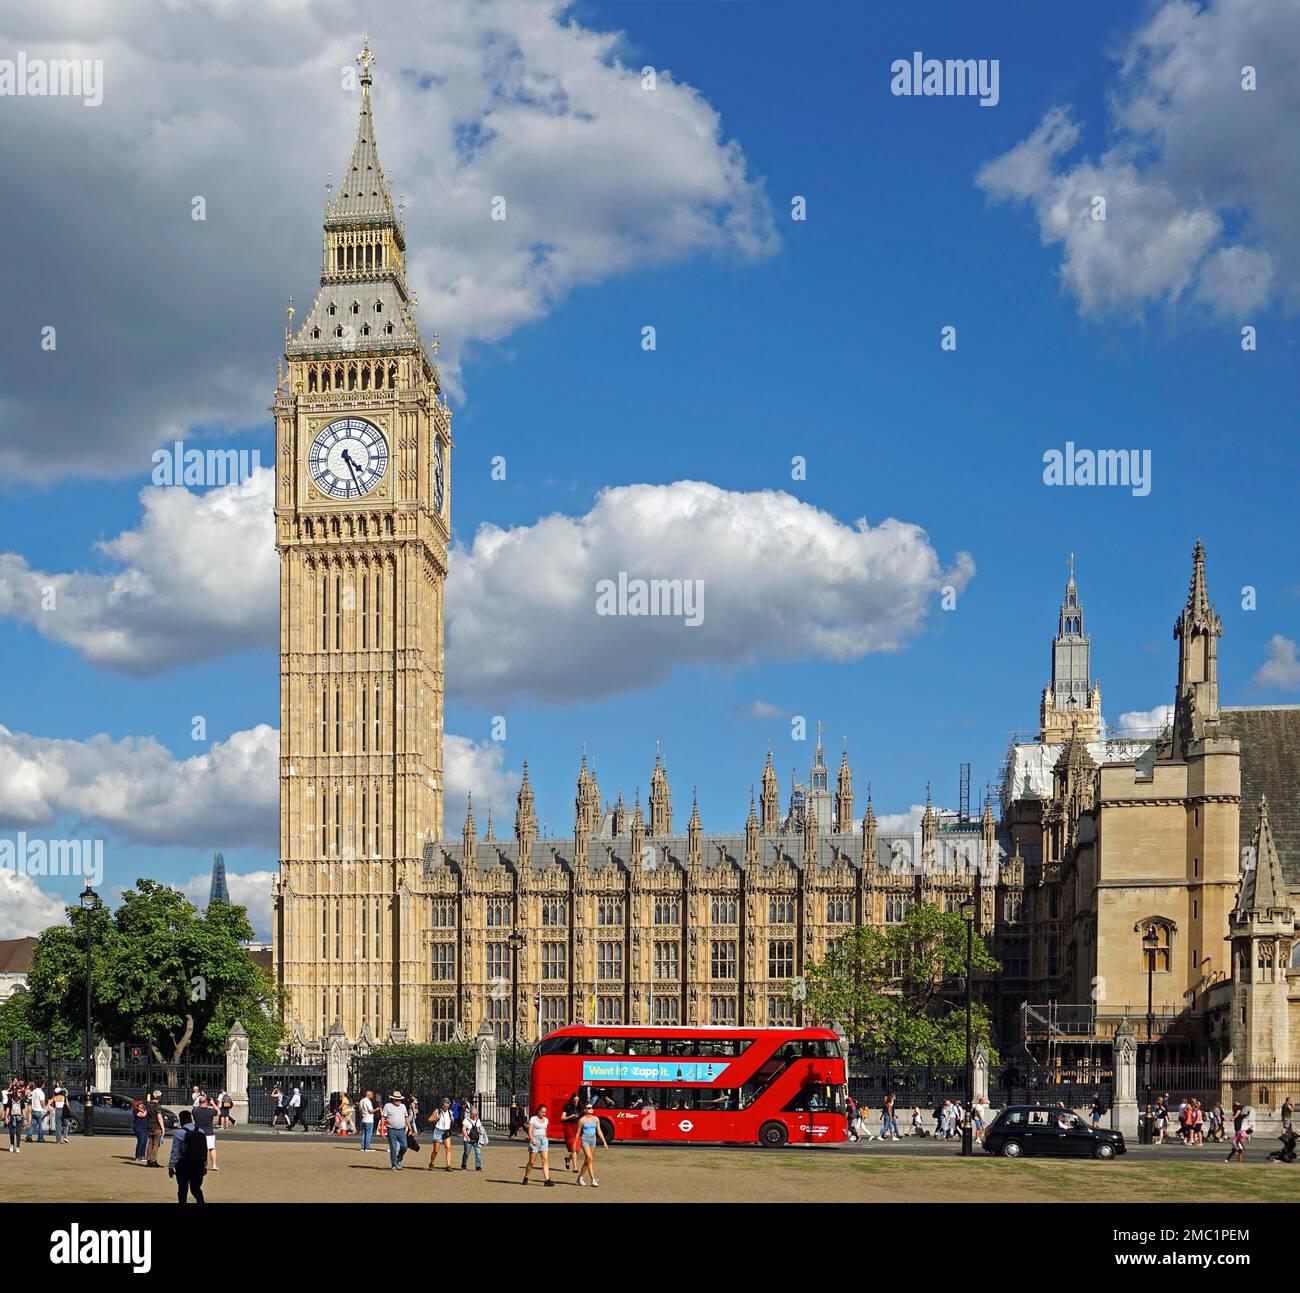 Clock Tower Big Ben, Westmister Palace, bus à impériale, Londres, Angleterre, Royaume-Uni Banque D'Images